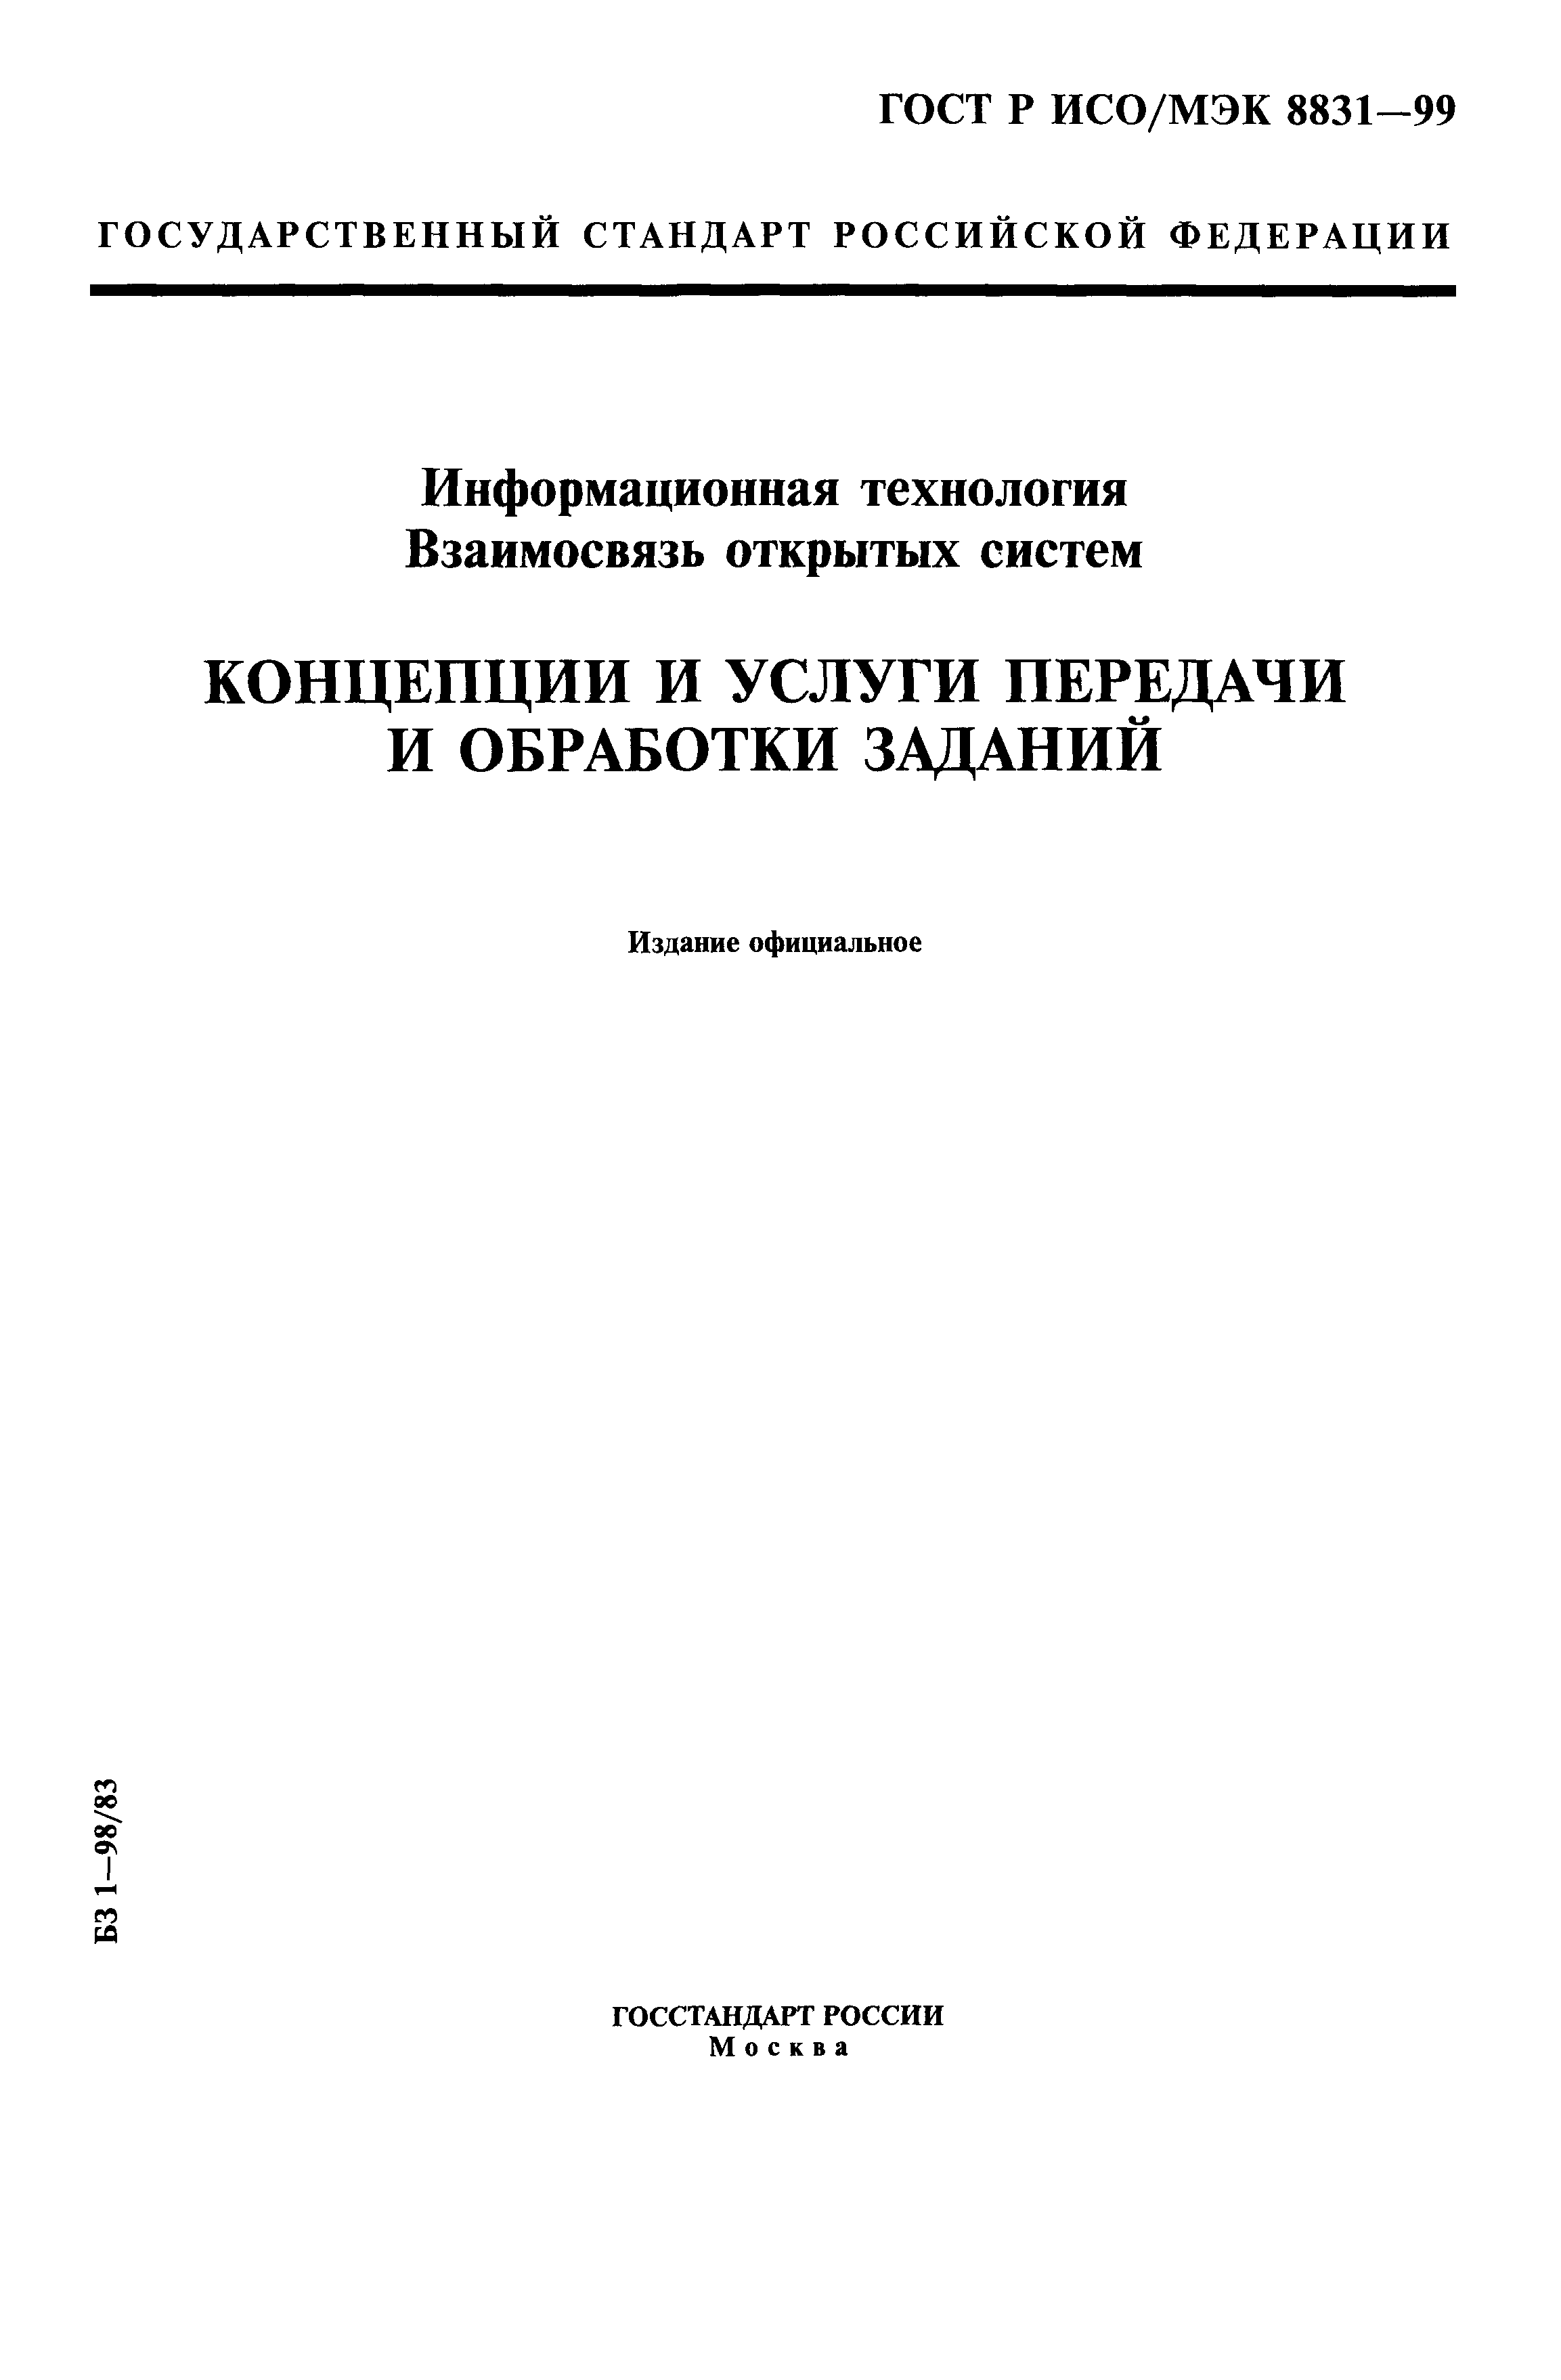 ГОСТ Р ИСО/МЭК 8831-99